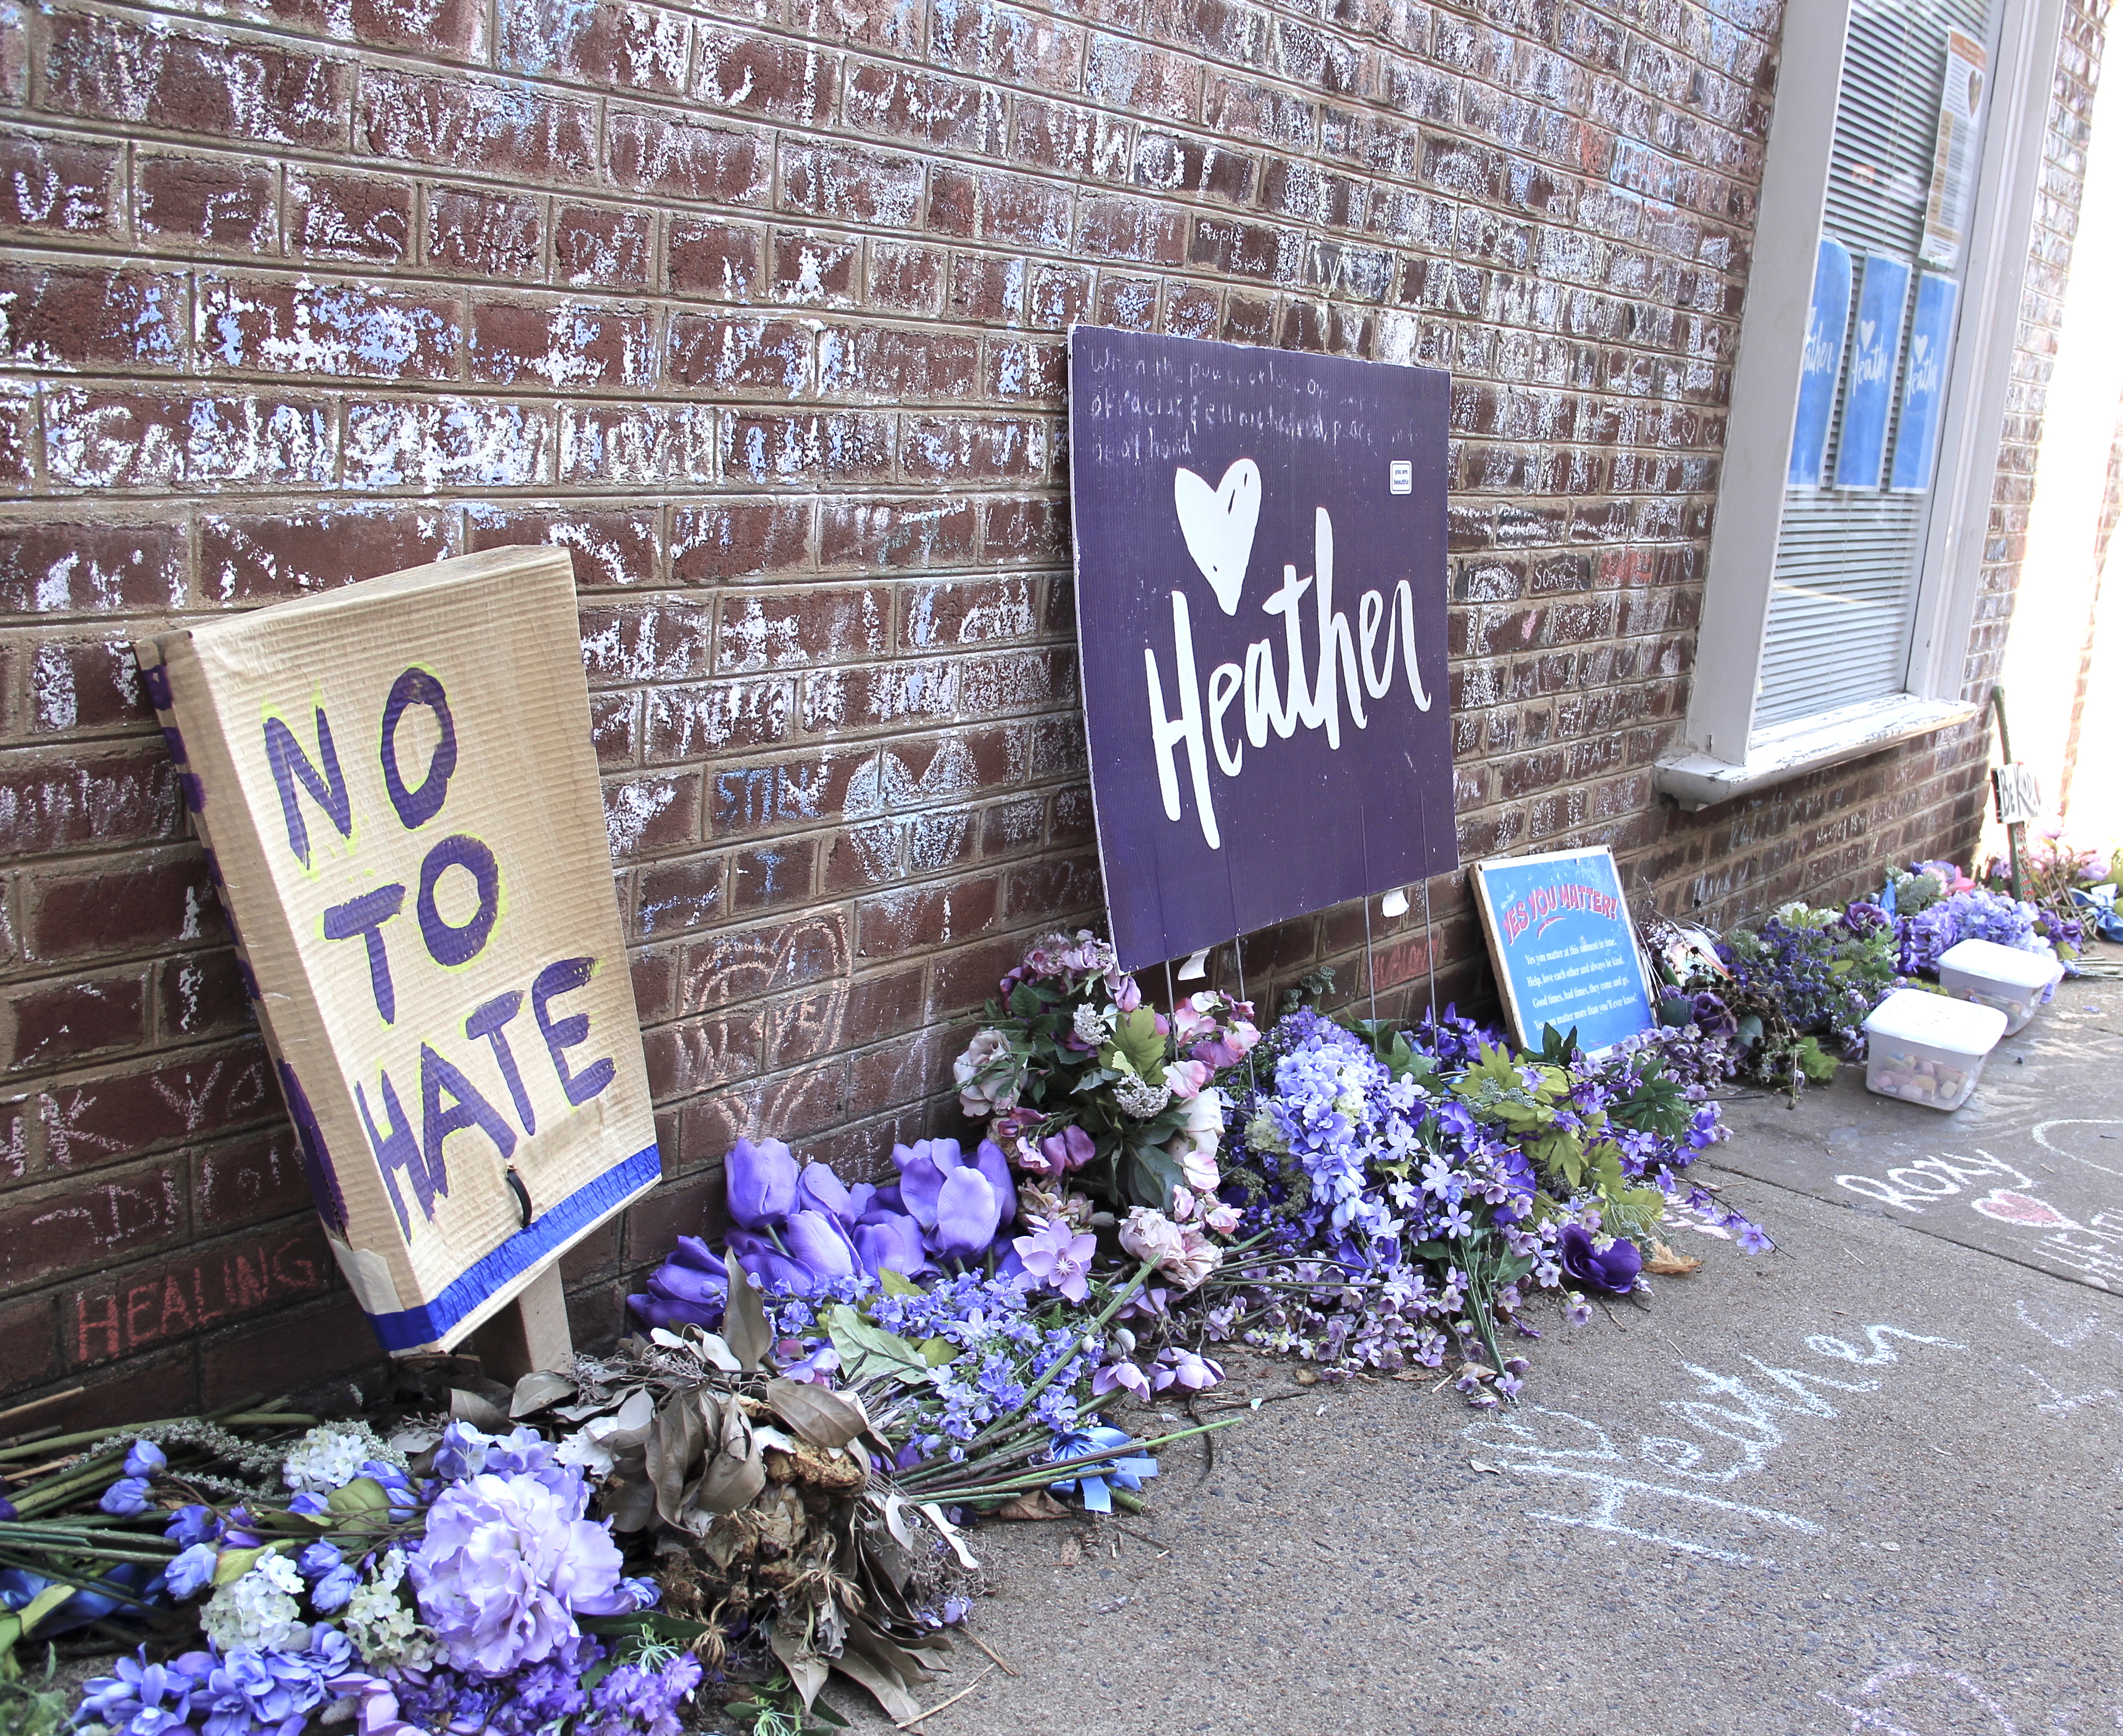 Makeshift memorial in Charlottesville for Heather Heyer.